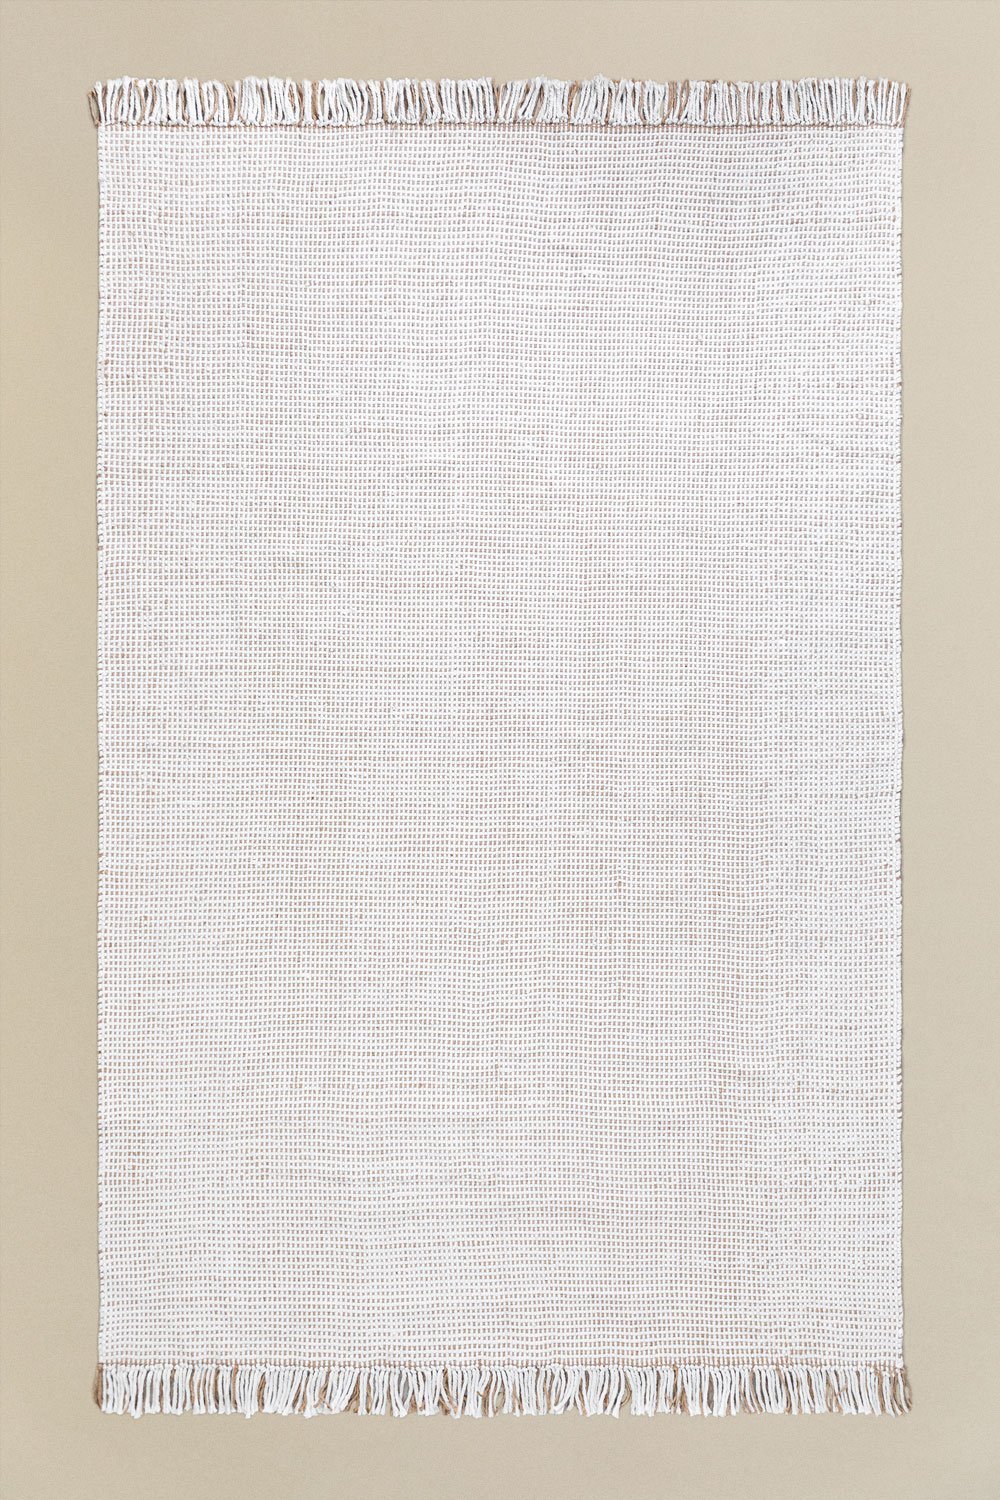 Tappeto in iuta per esterni (300x200 cm) Eilyn, immagine della galleria 1